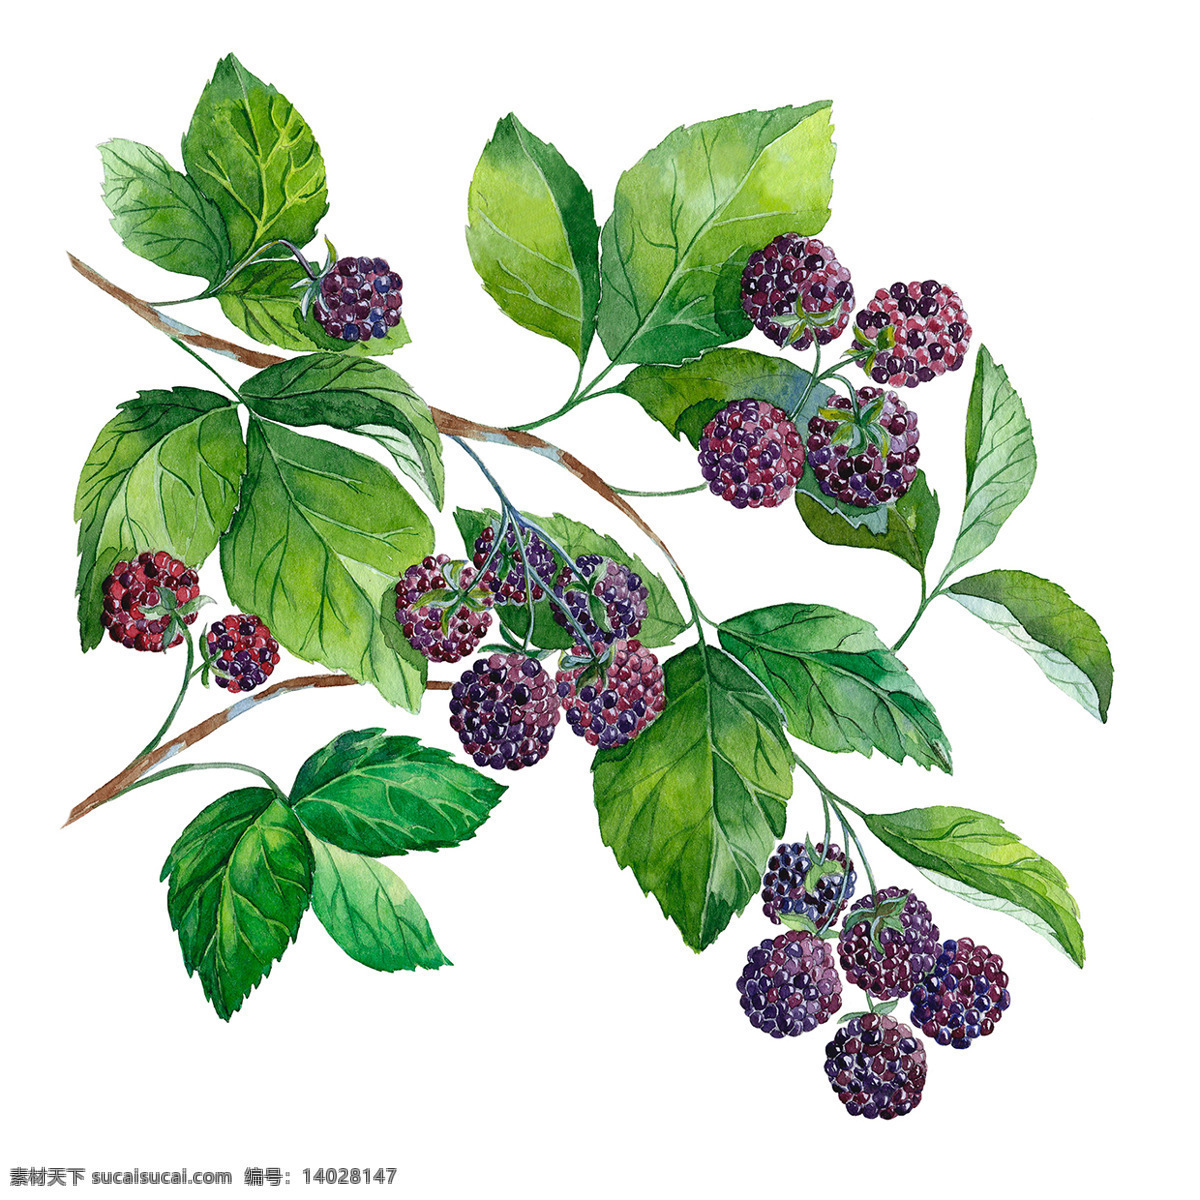 树枝上的树莓 树莓 树枝 国外 彩铅绘画 水彩 水果手绘 临摹 彩铅水果 手绘教程 水果插画 精美绘画 食物 彩色素描 插画 文化艺术 绘画书法